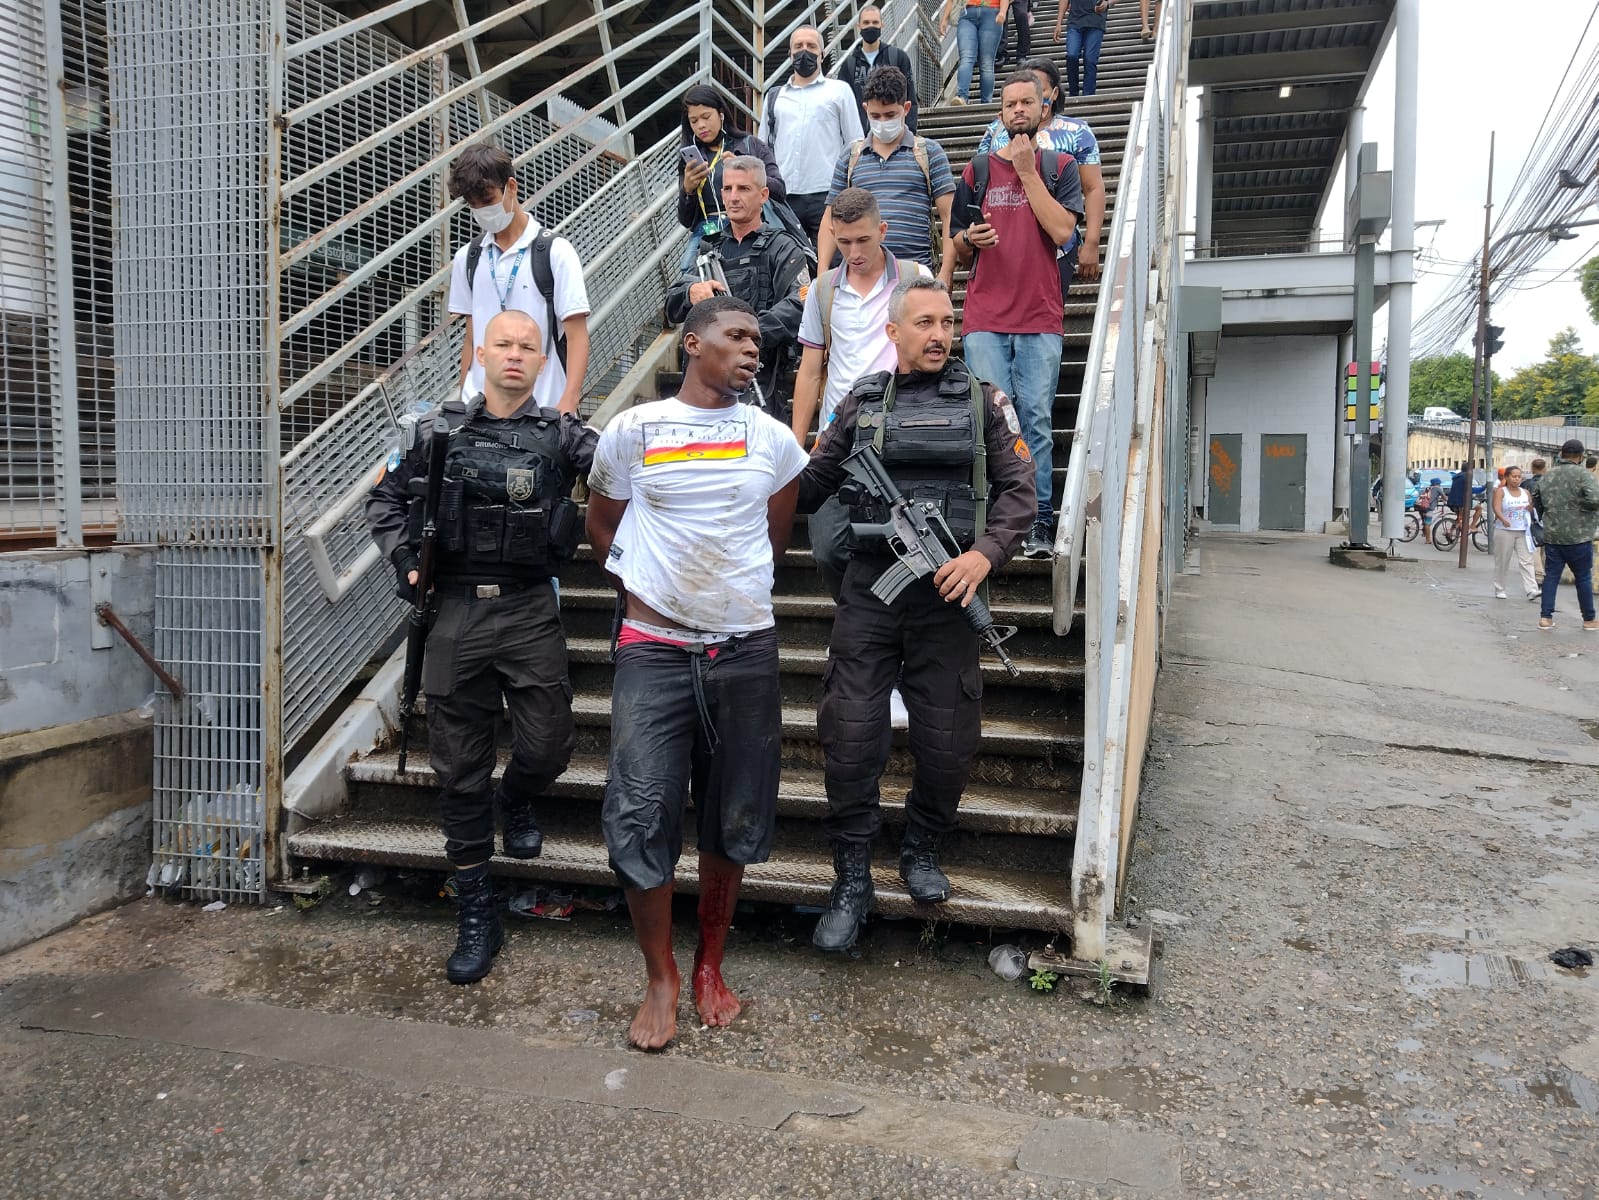 Criminoso é preso após assaltar passageiros na estação de trem São Cristóvão